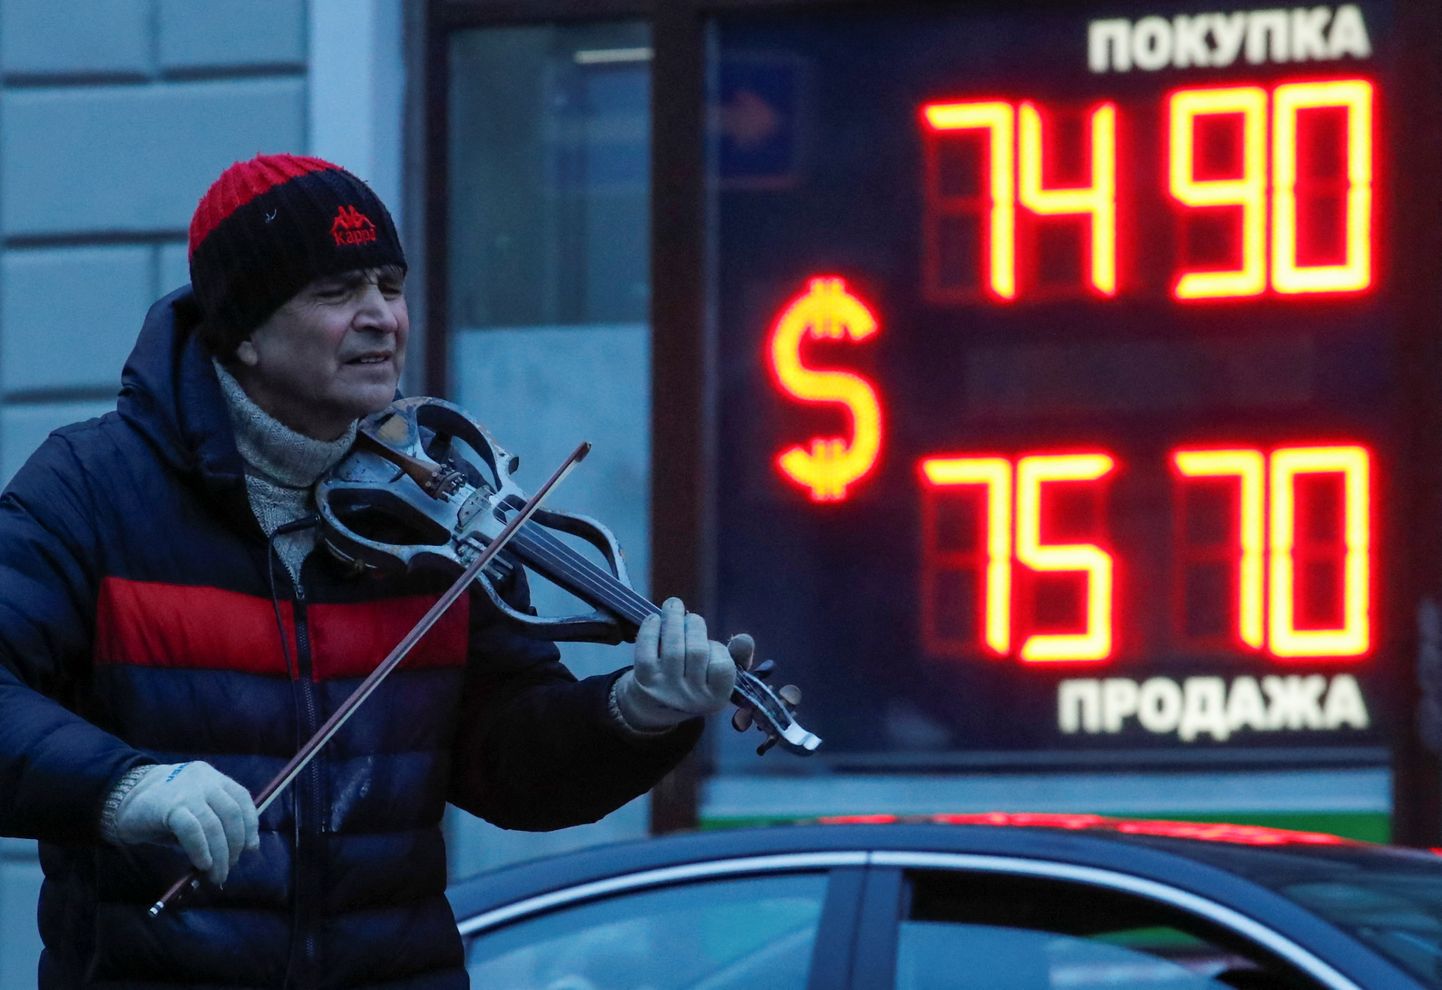 Valuutavahetuse kursid Venemaal